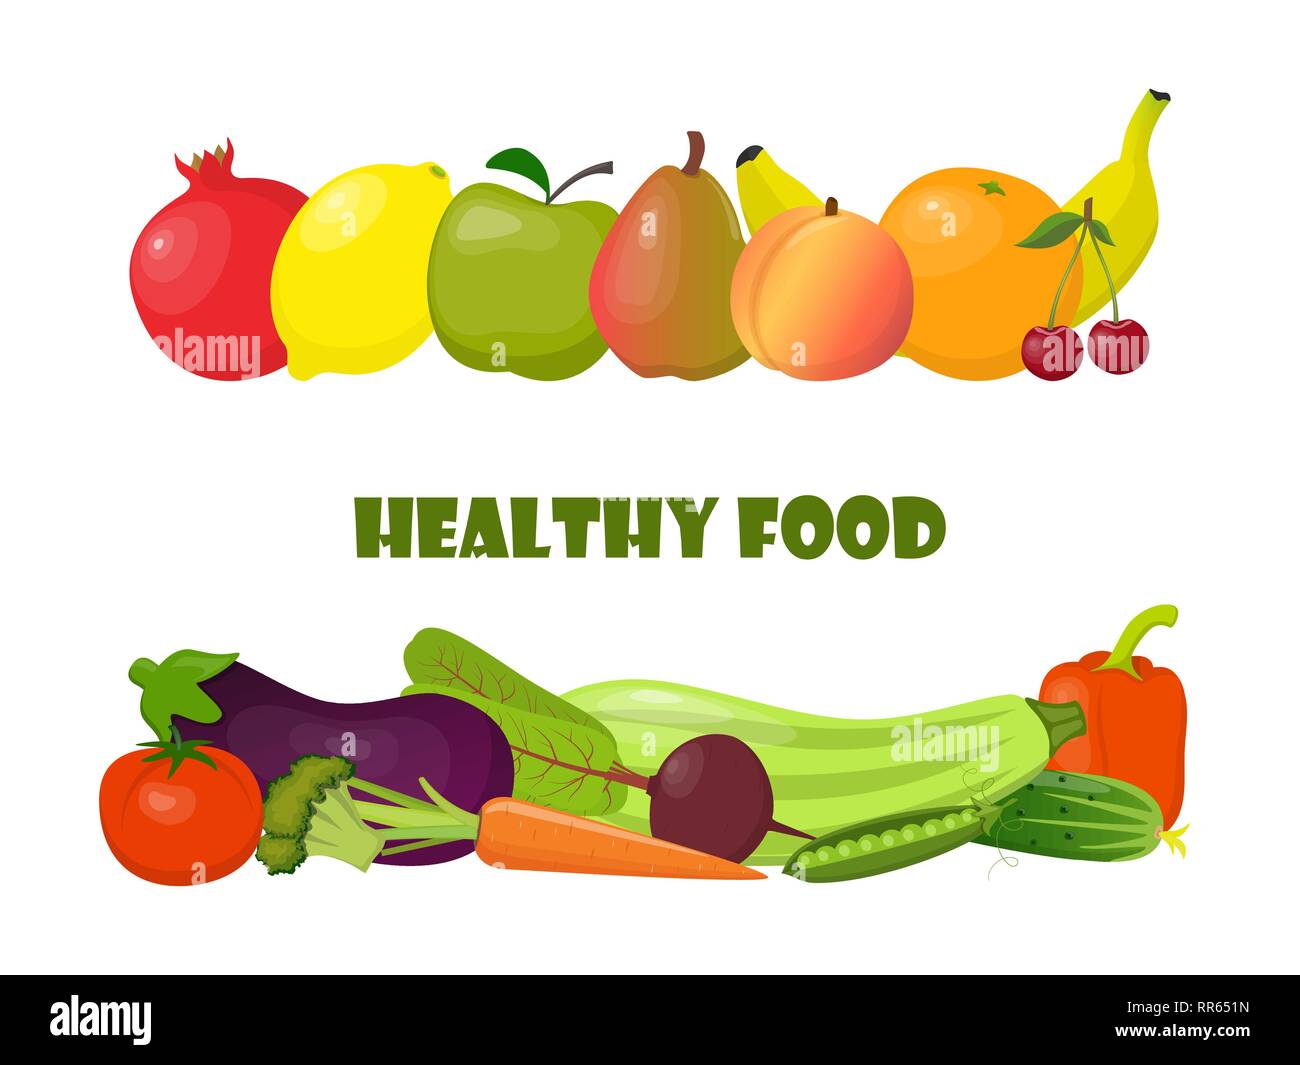 Papiertüte voller Natur Bio Gemüse und Früchte. Schöne Komposition mit Wassermelone, Zucchini, Aubergine, Granatapfel, Orange, Banane, beetr Stock Vektor